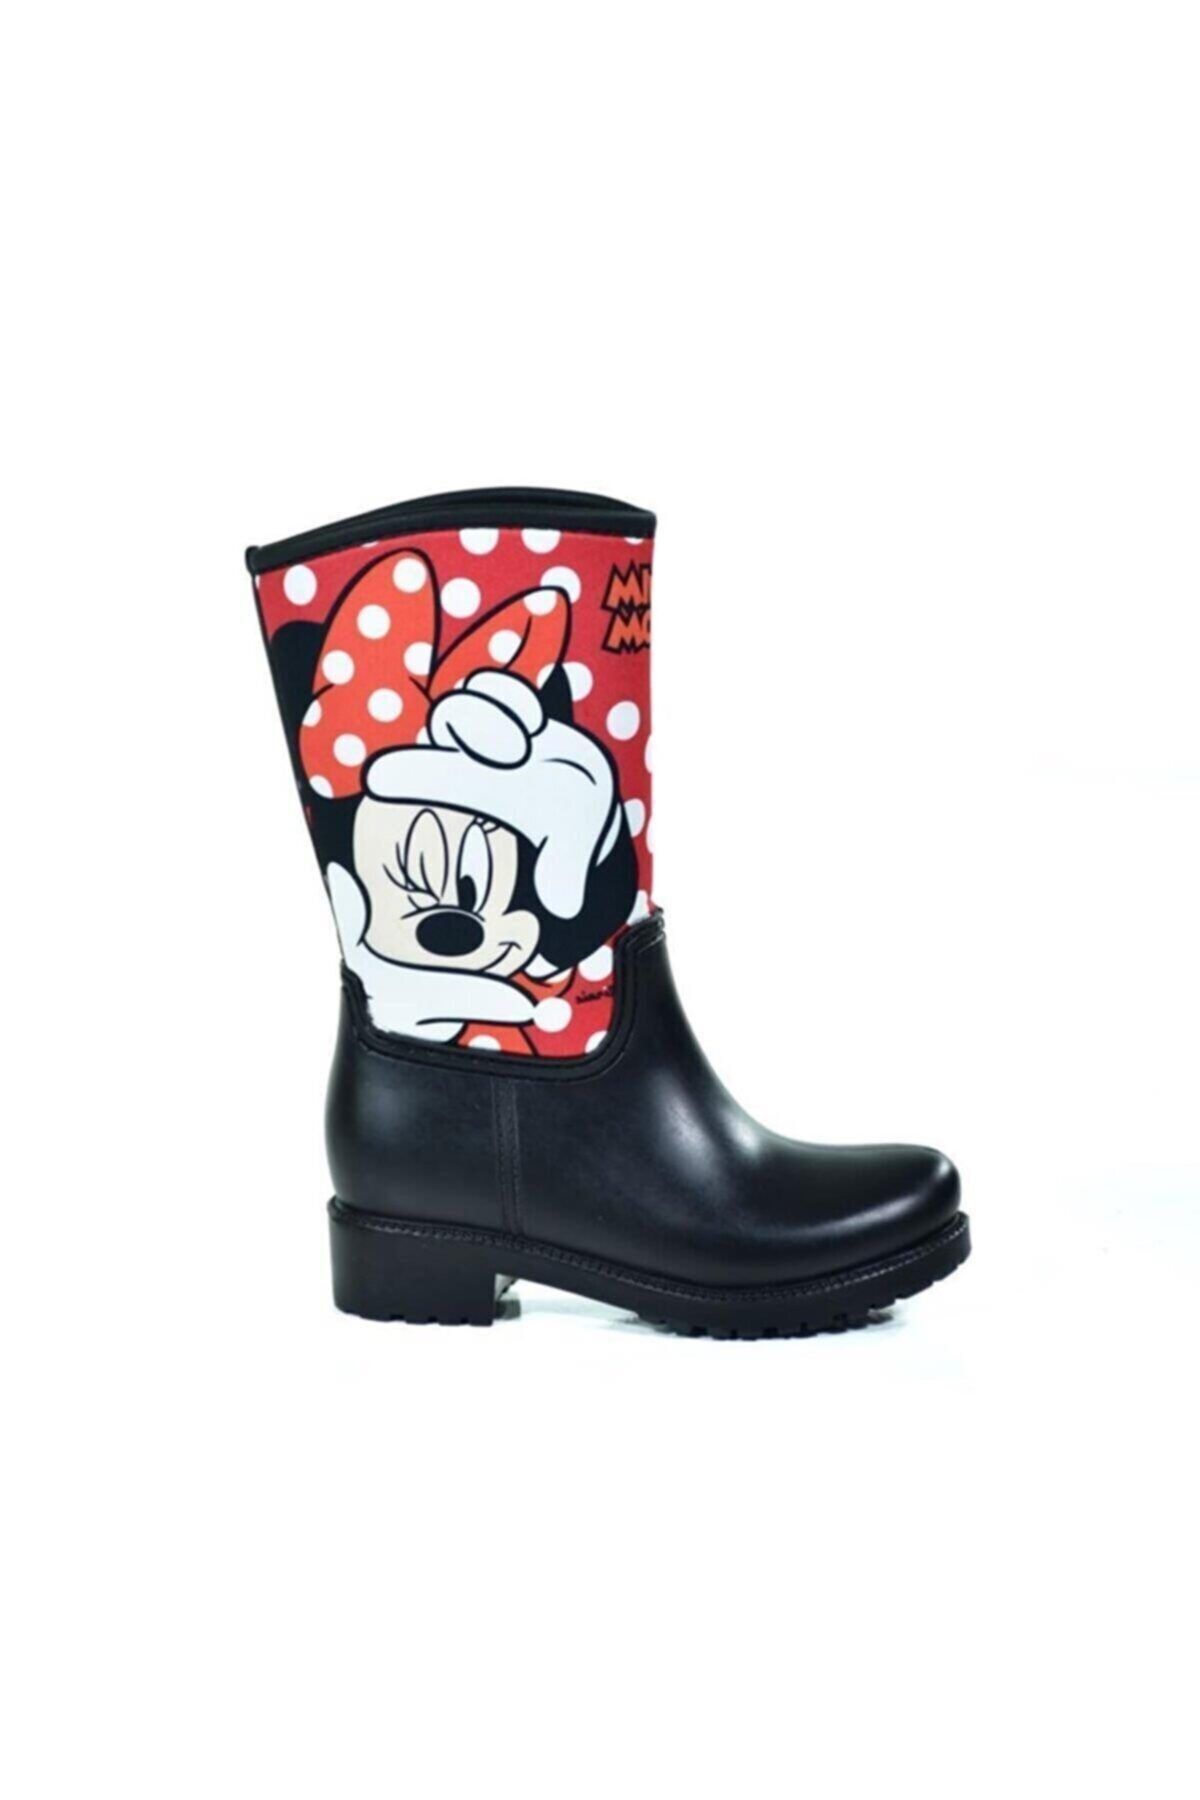 ODESA AYAKKABI MARKET Mickey Mouse Termal Içi Kürklü Kız Çocuk Yağmur Çizmesi